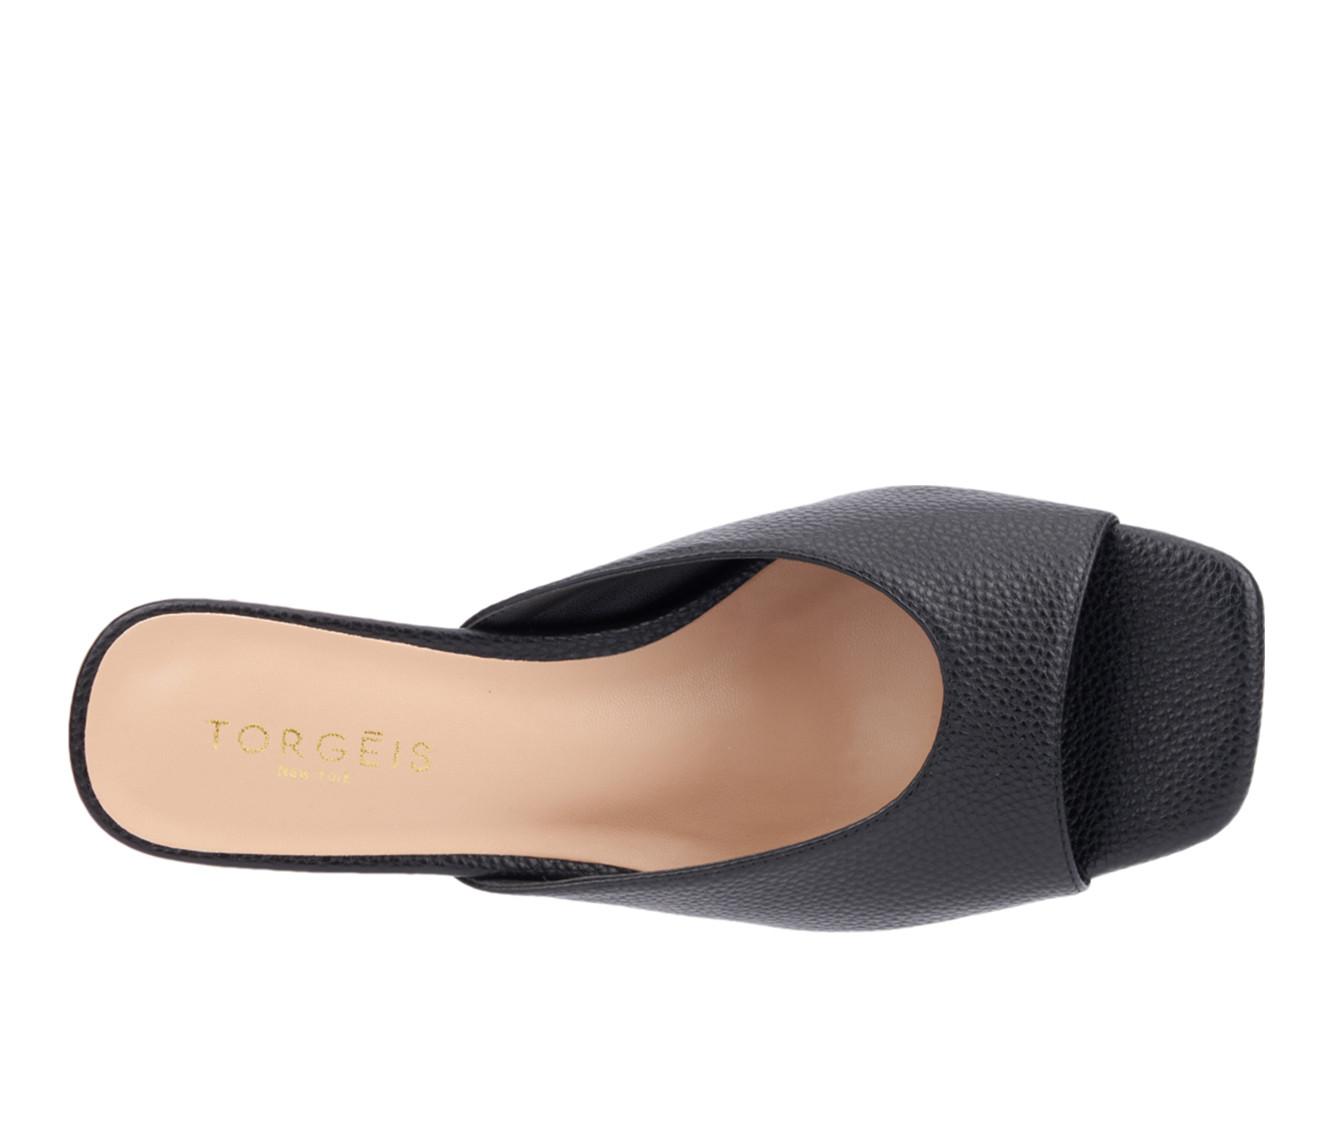 Women's Torgeis Carissa Wedge Sandals